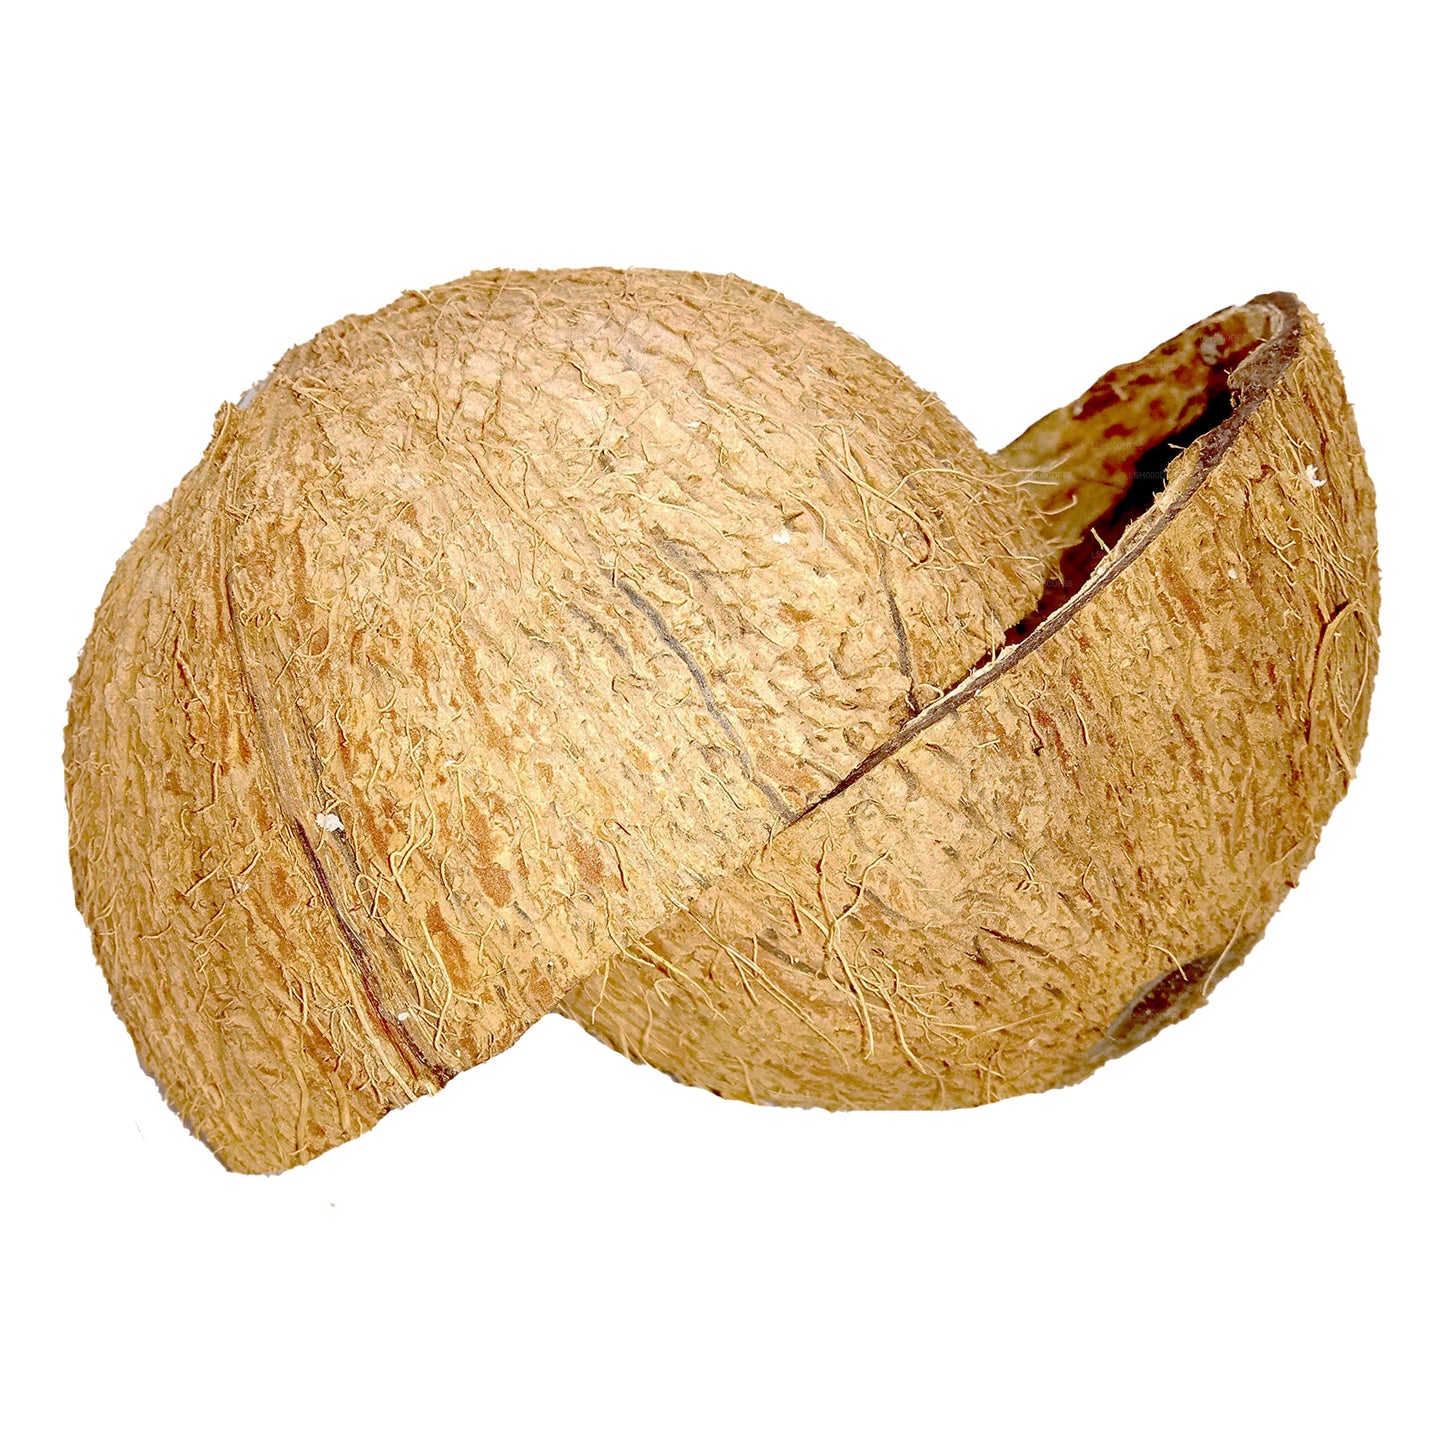 Kokosnootschaalhelften (2 stuks)